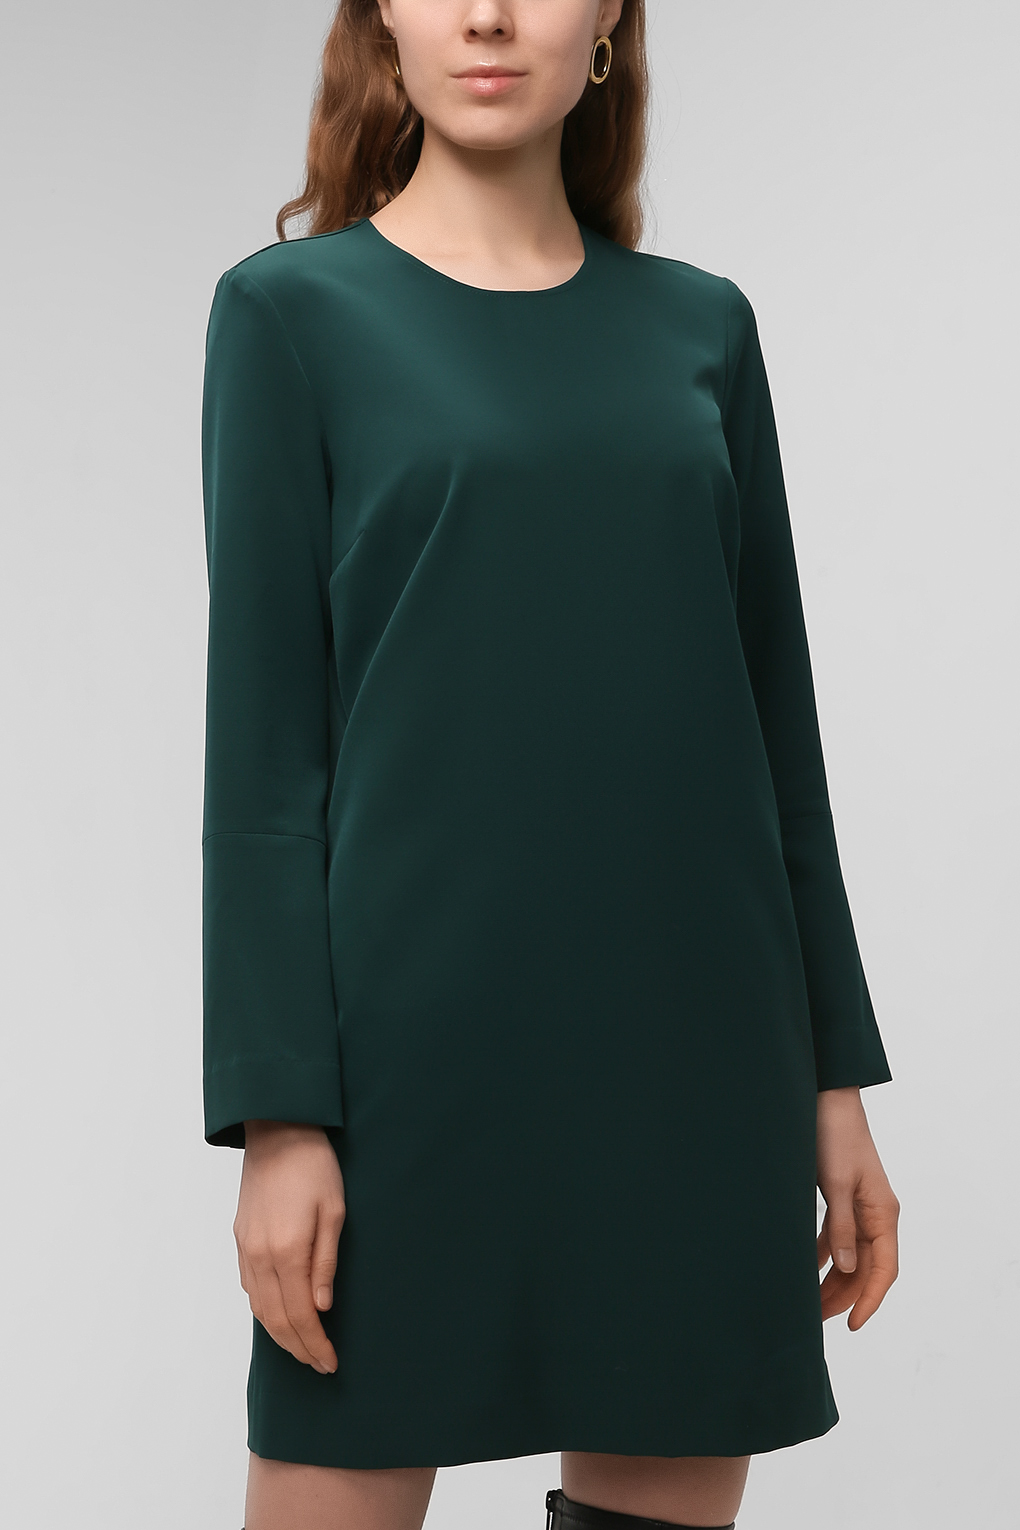 Платье женское PAOLA RAY PR221-3069 зеленое XL